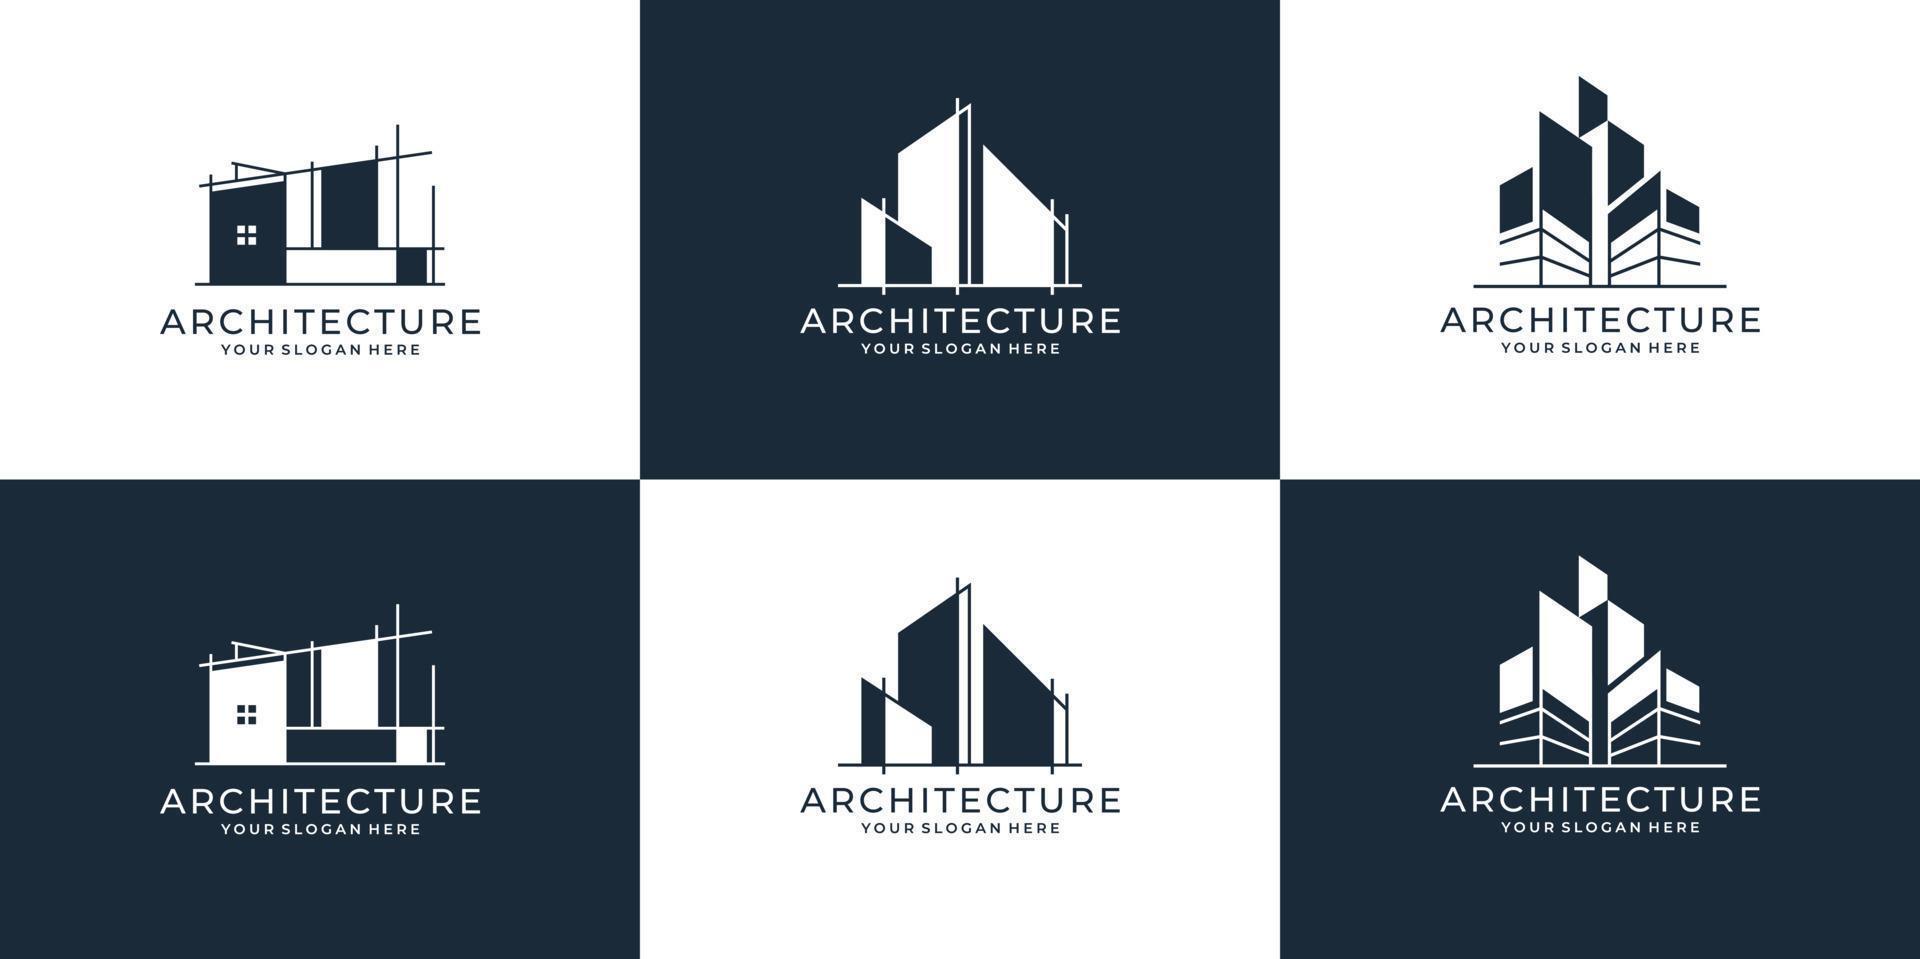 conjunto de colección de conjuntos de arquitectura de construcción, bienes raíces, urbano, arquitectura, paquete, símbolos de diseño de logotipo de ilustración vectorial. vector premium